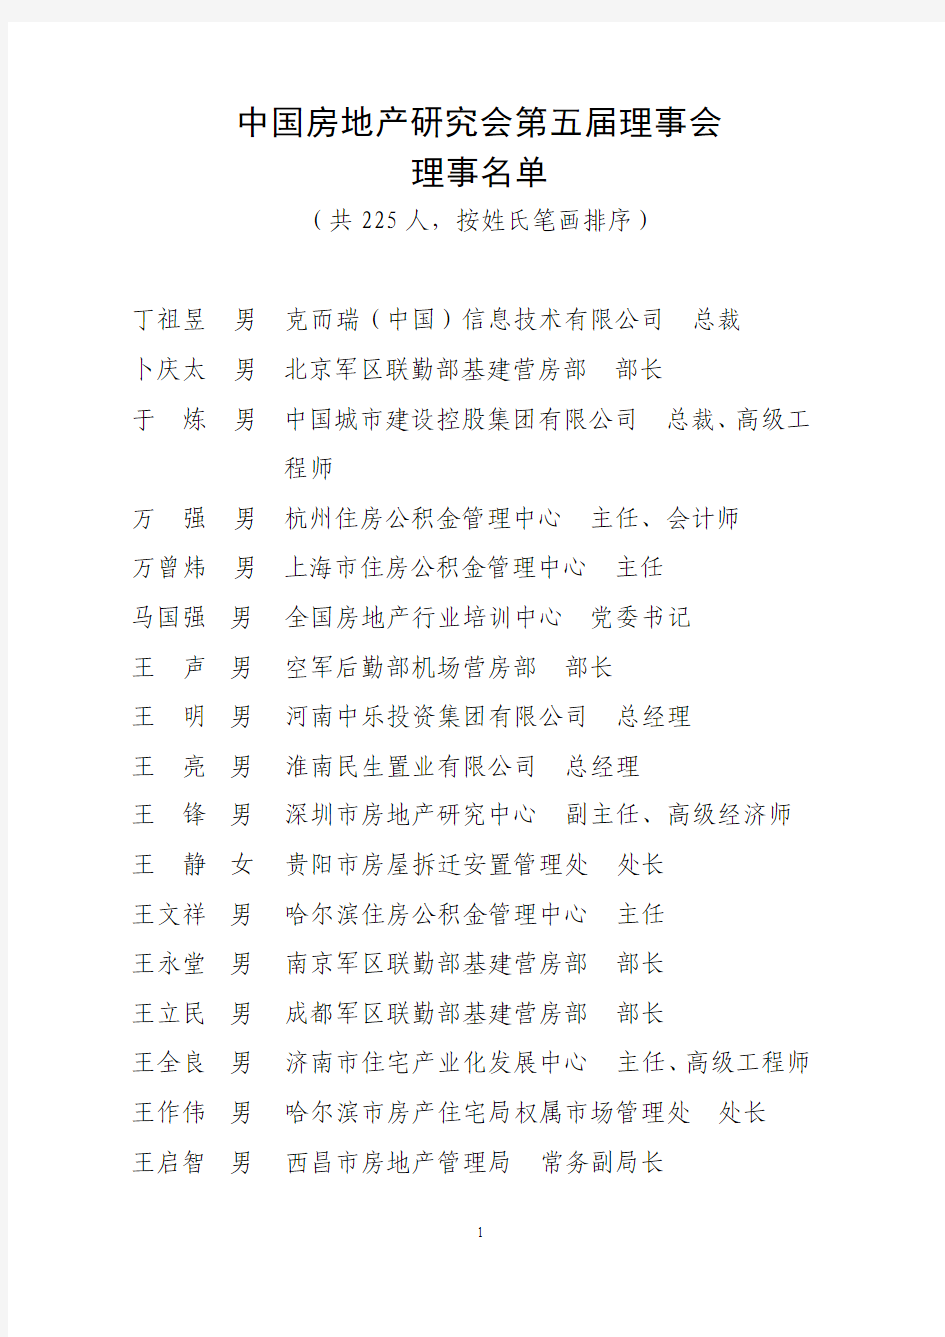 中国房地产研究会第五届理事会名单